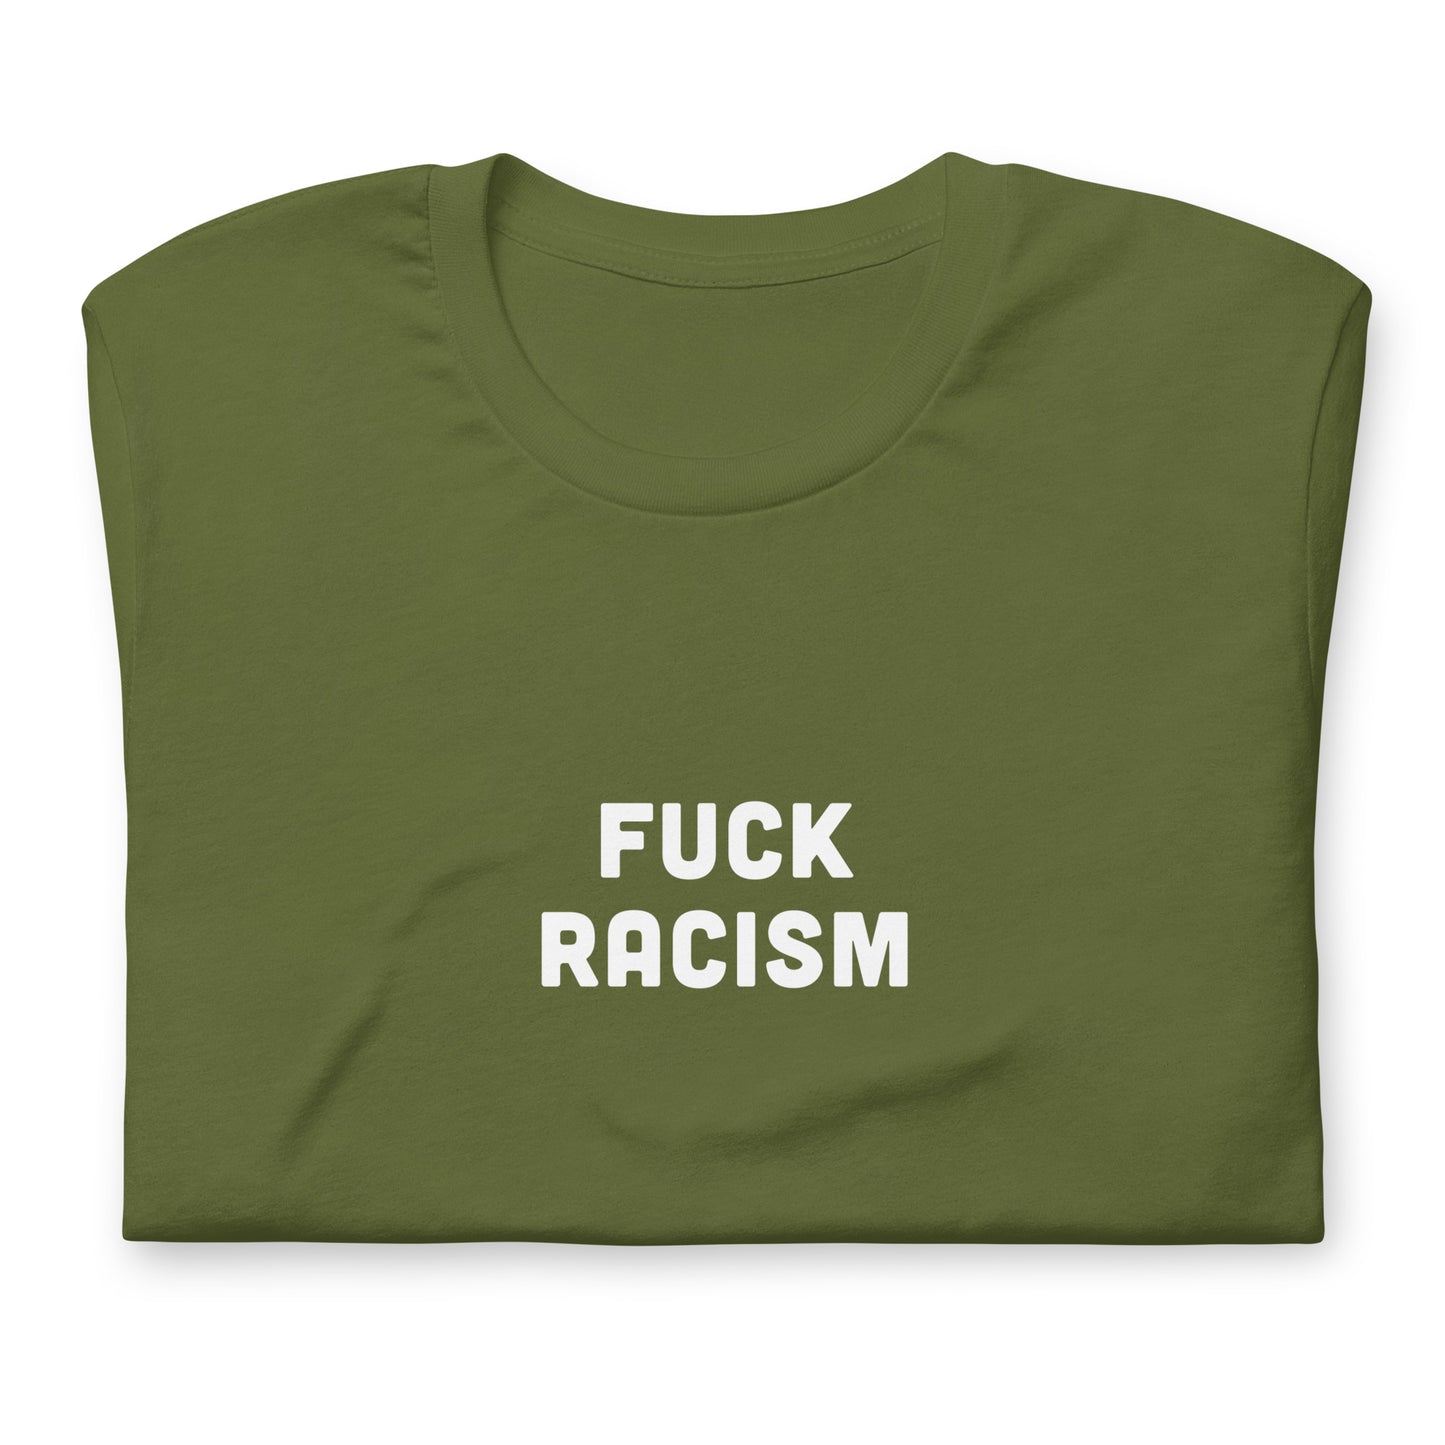 Fuck Racism T-Shirt Size 2XL Color Black